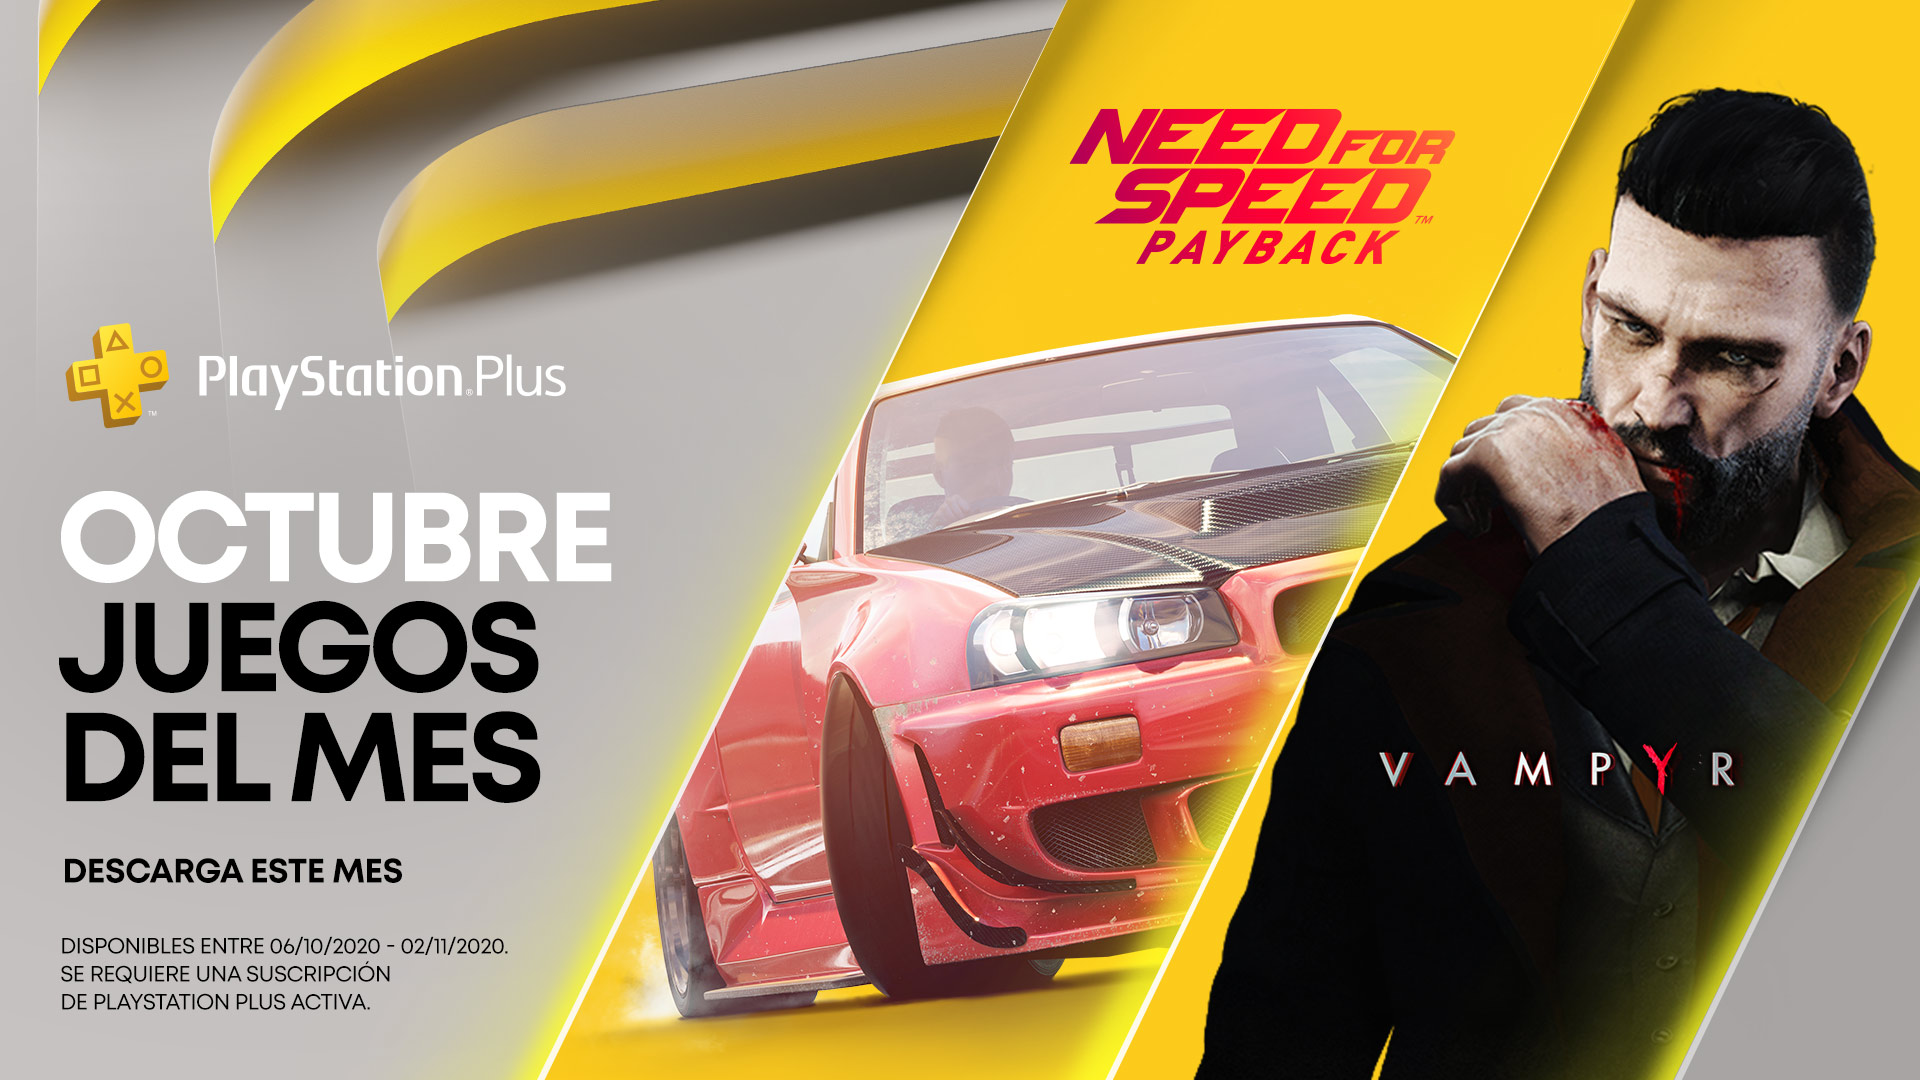 Need for Speed Payback, Vampyr y Massira son los nuevos títulos para PlayStation Plus en octubre 2020